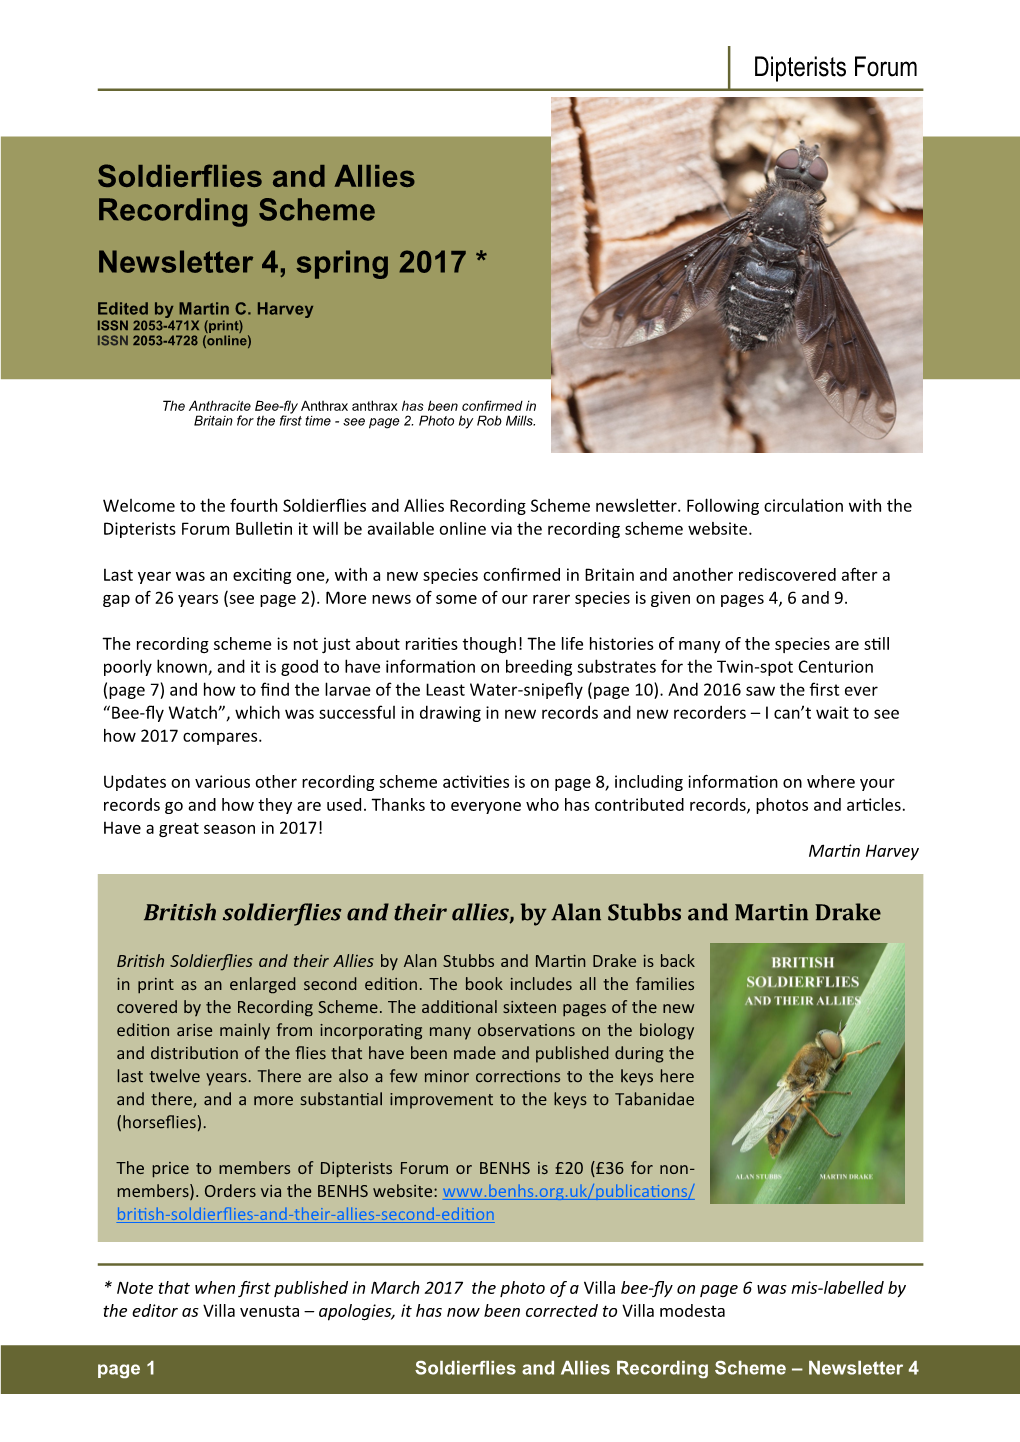 Soldierflies and Allies Recording Scheme Newsletter 4, Spring 2017 *